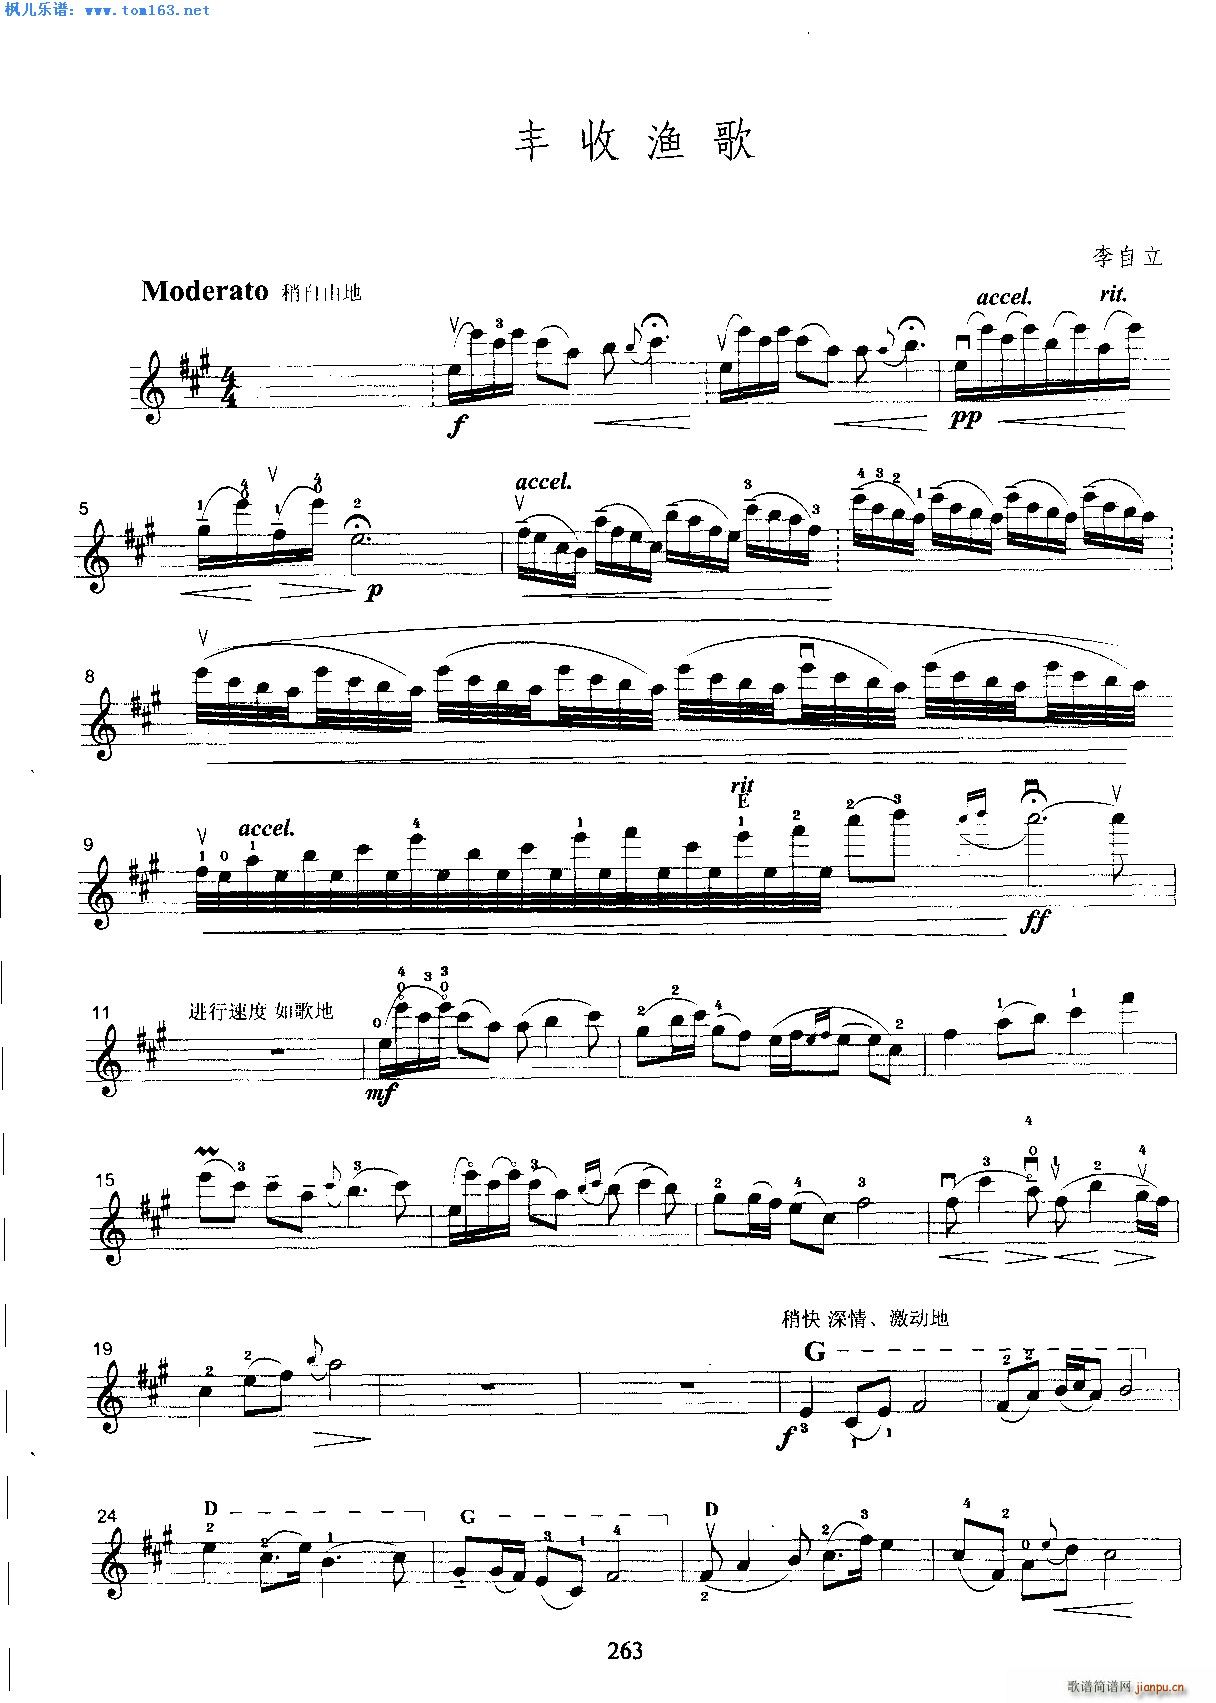 丰收渔歌 李自立简谱小提琴版,五线谱,初学者独奏曲谱完整版